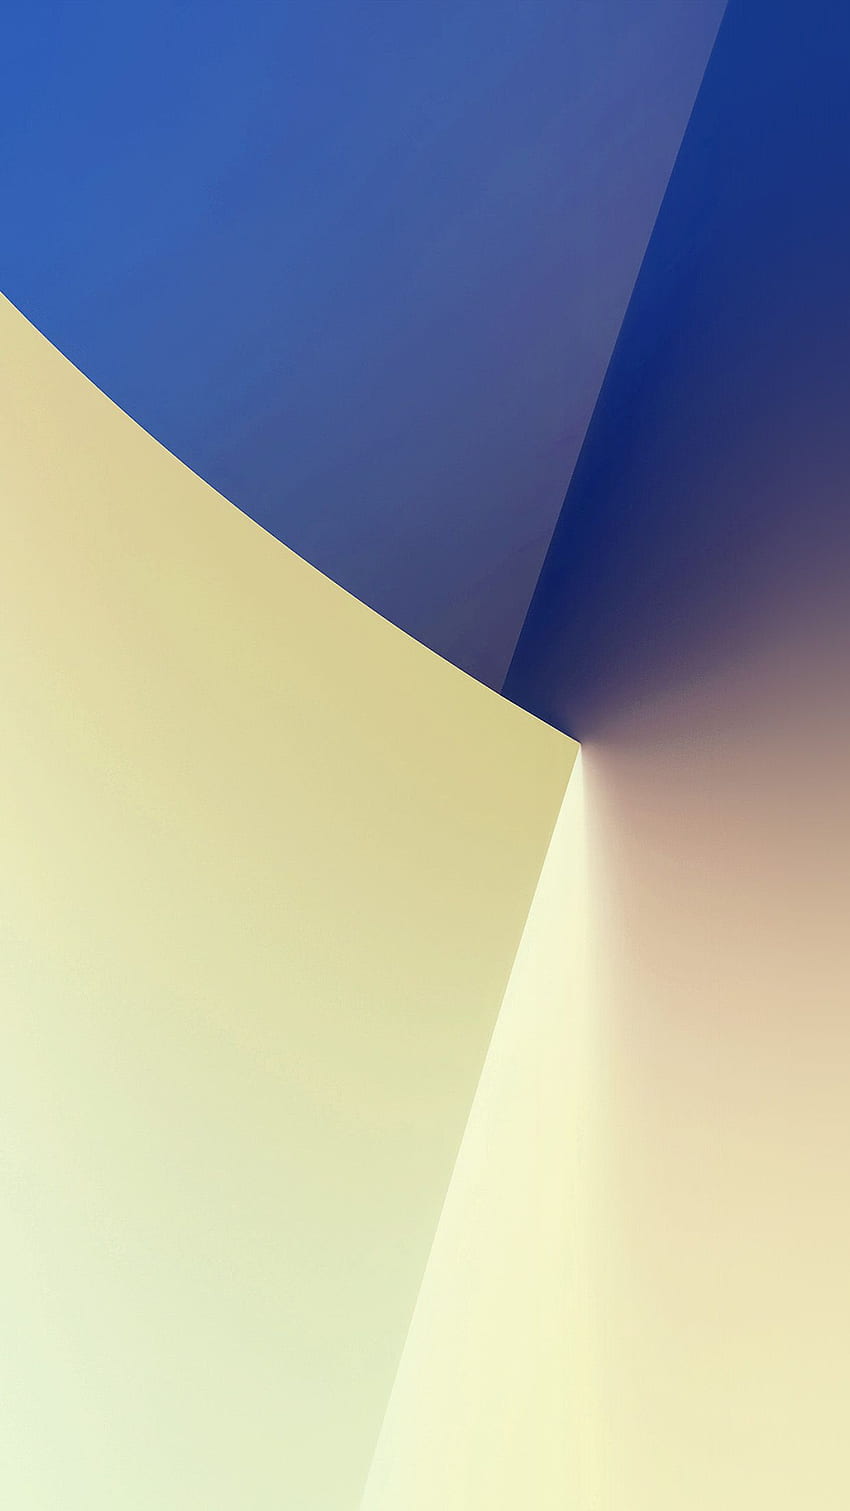 iPhoneX. simple polígono mínimo azul amarillo patrón de arte blanco, blanco y azul mínimo fondo de pantalla del teléfono